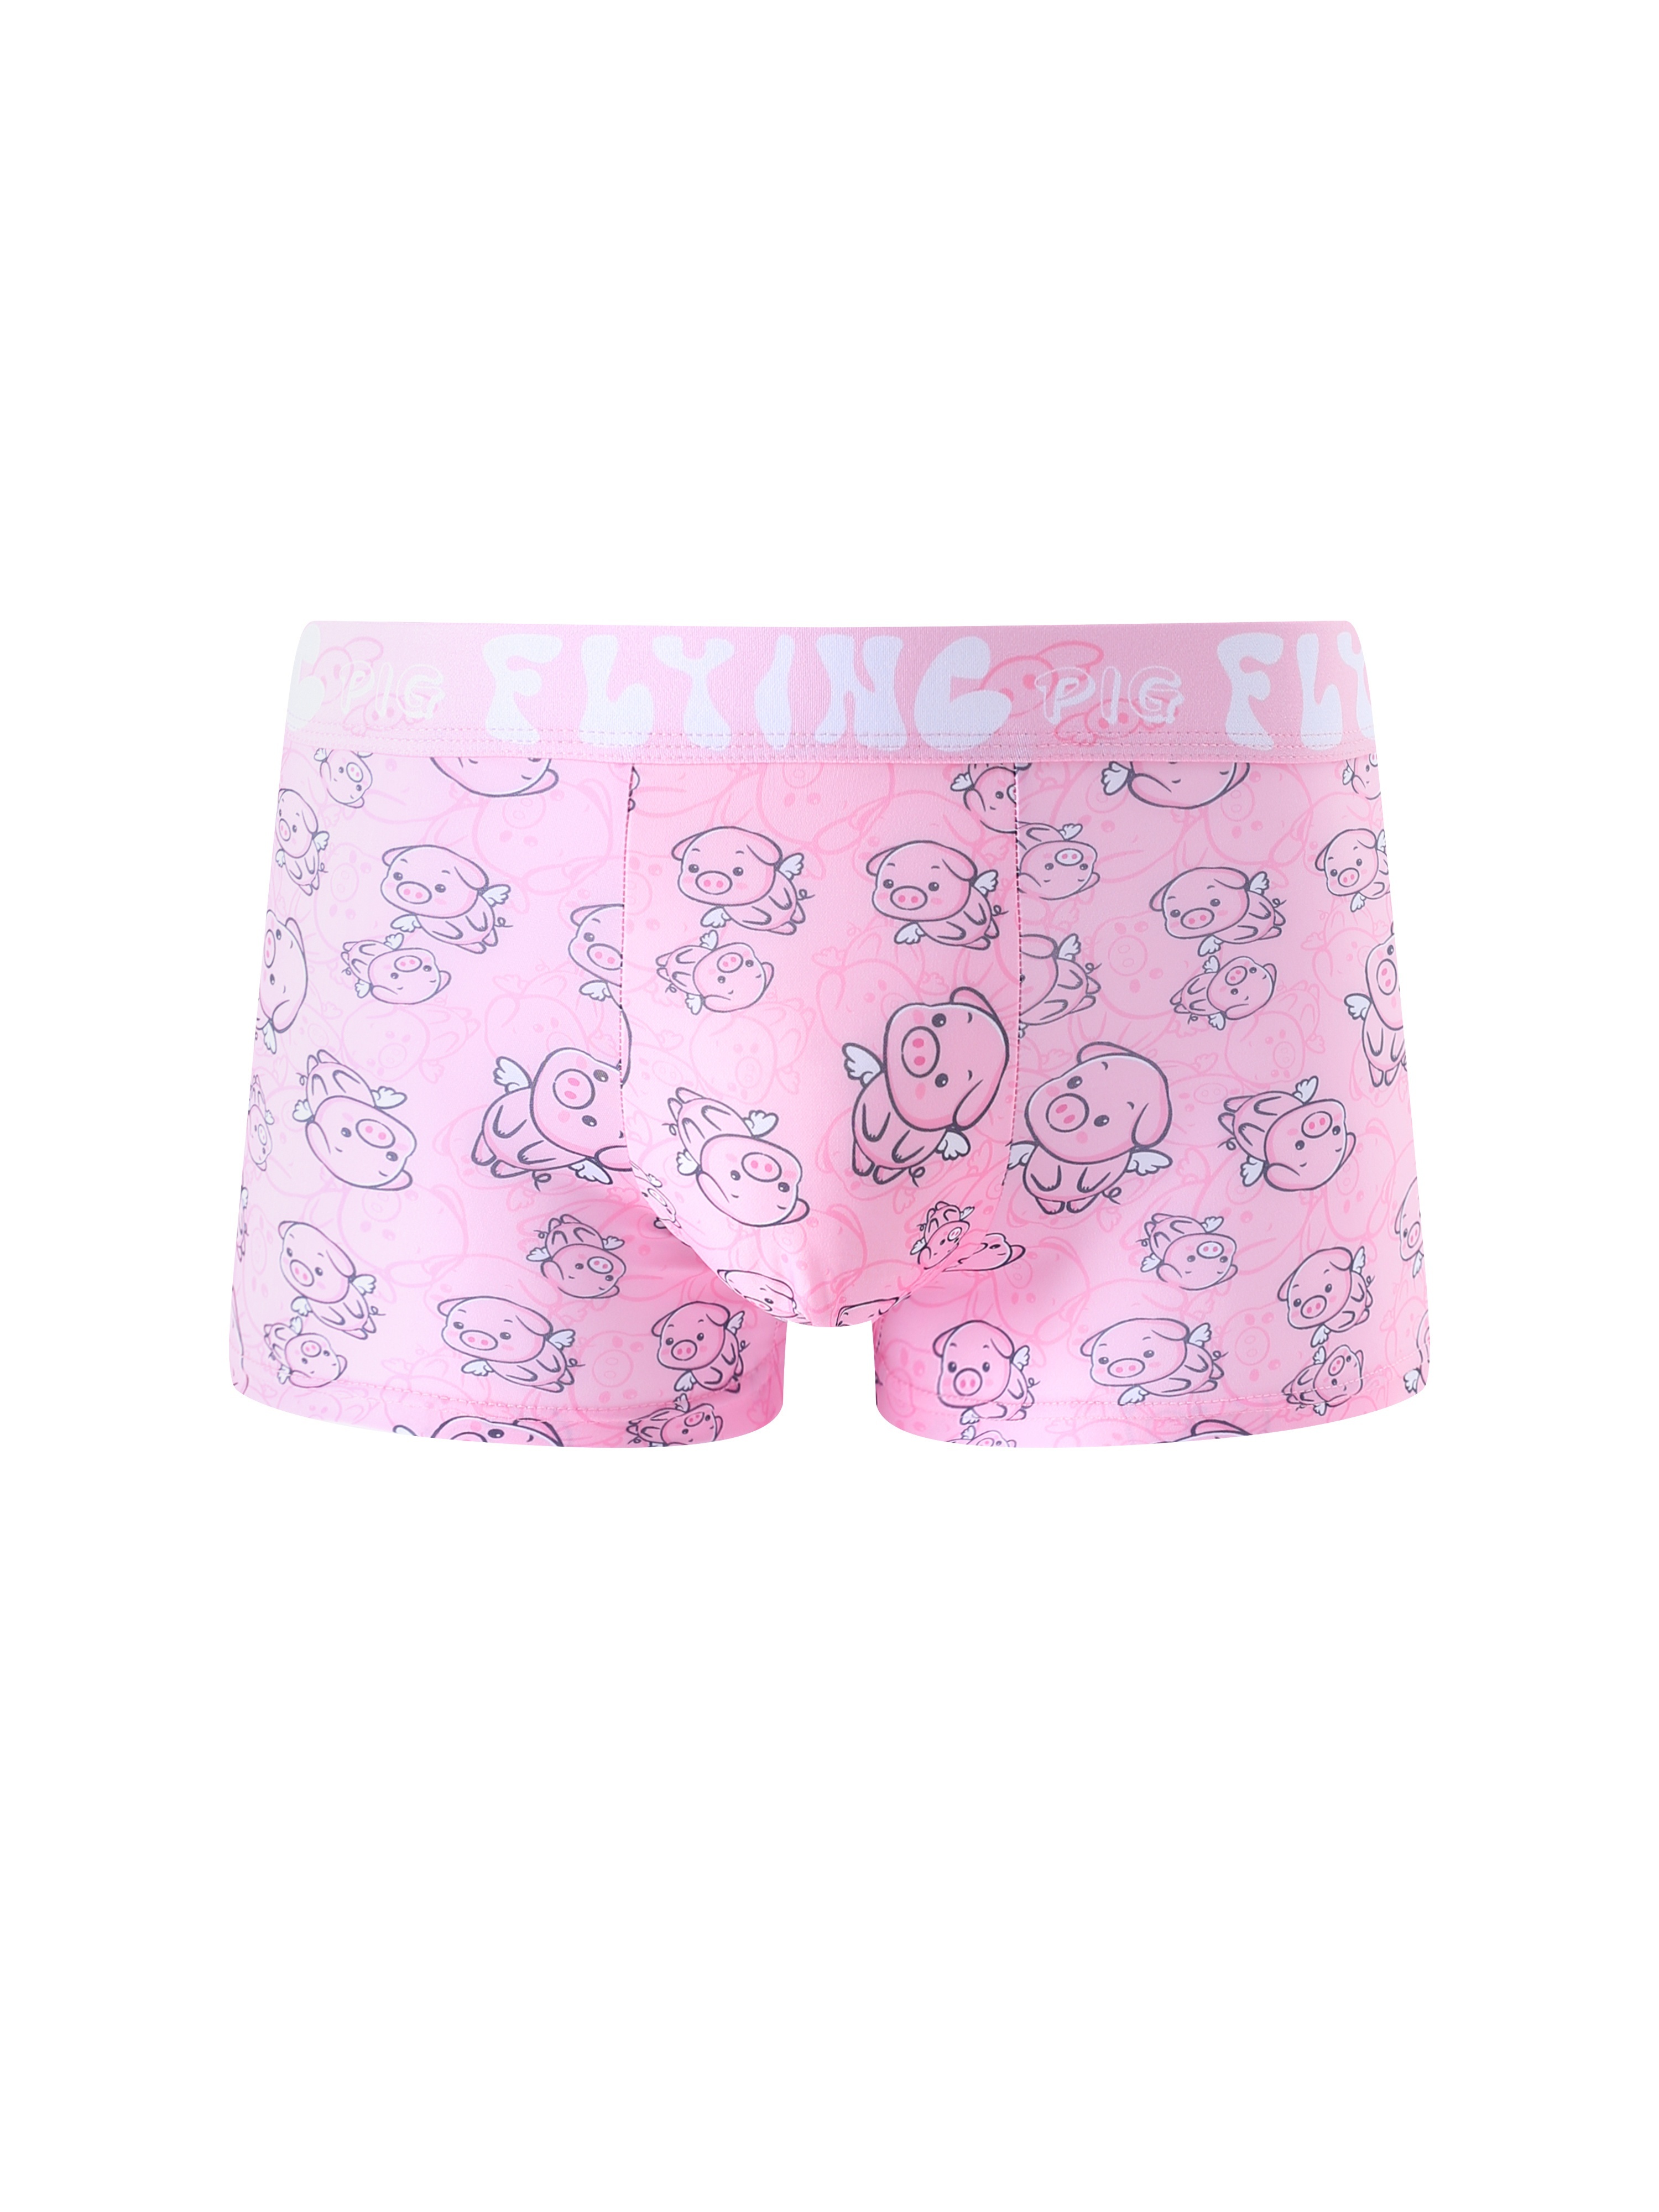 Pig Underwear 